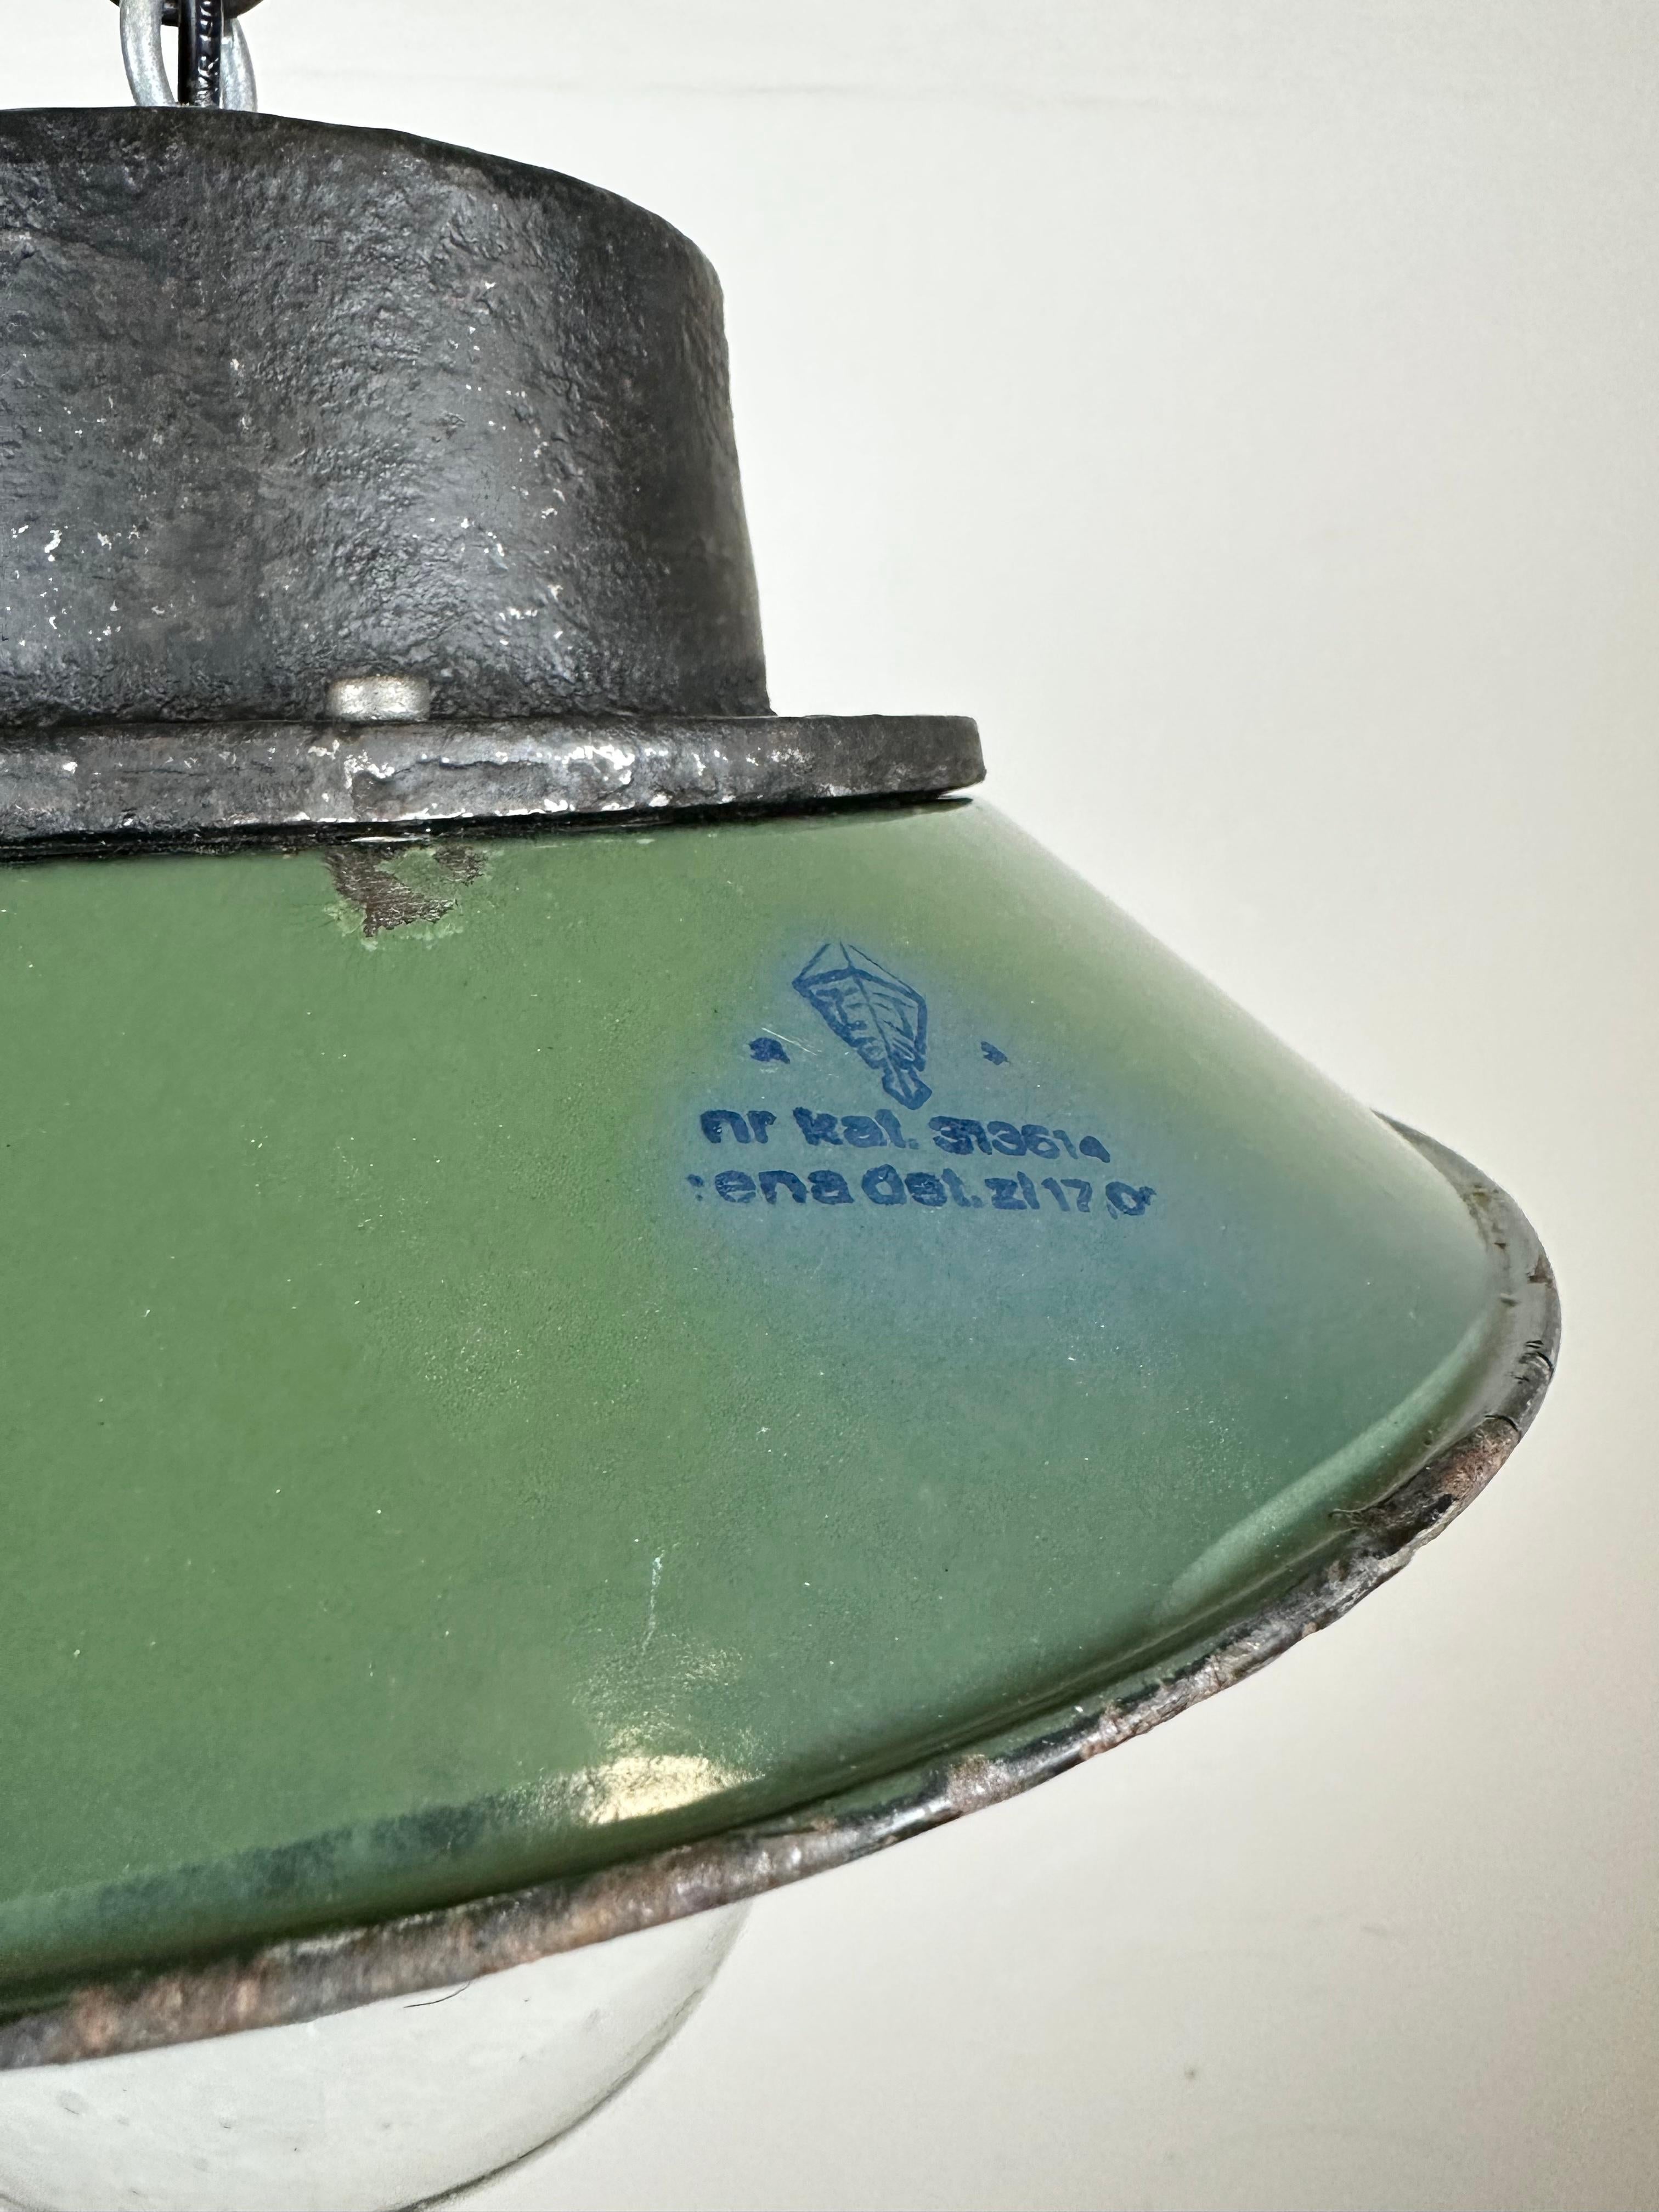 Industriel Lampe à suspension industrielle en émail vert et fonte, années 1960 en vente